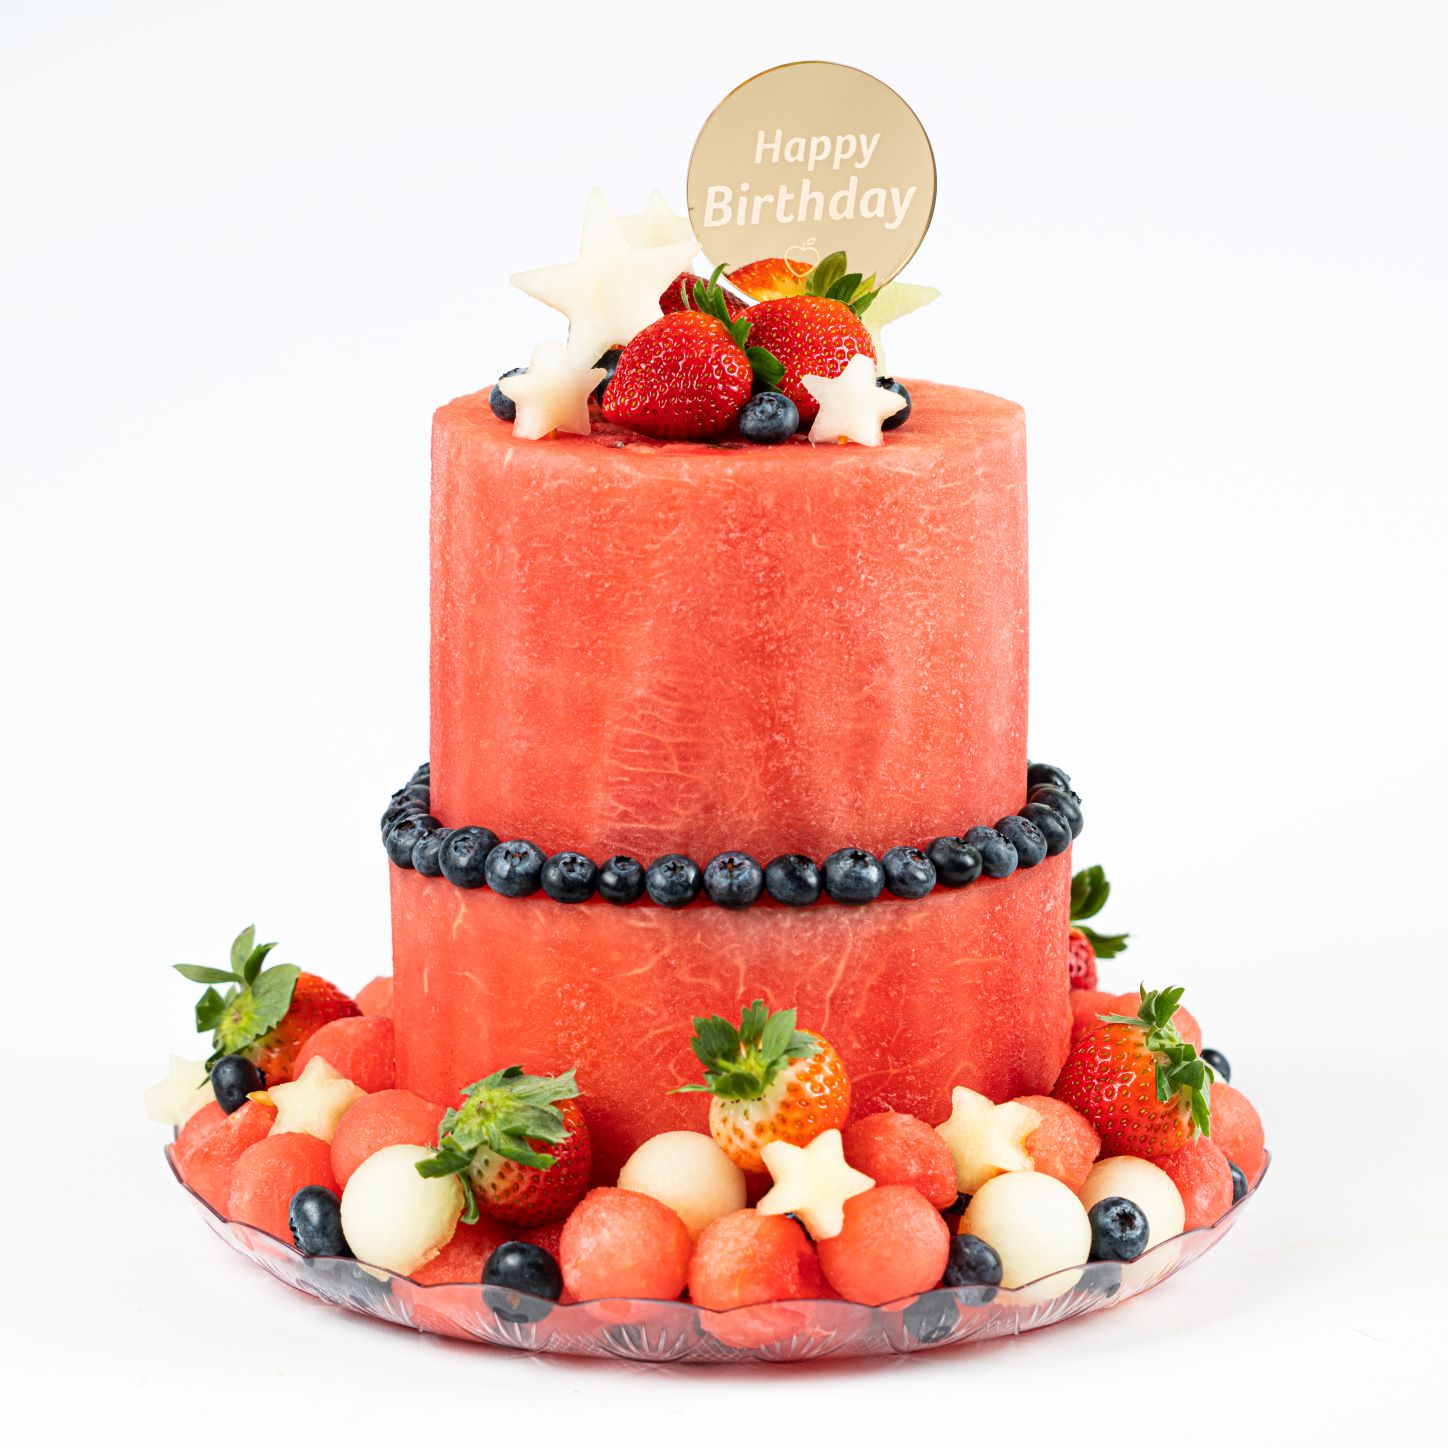 Happy Birthday Cake 2 Tier - 27 cm Transparent